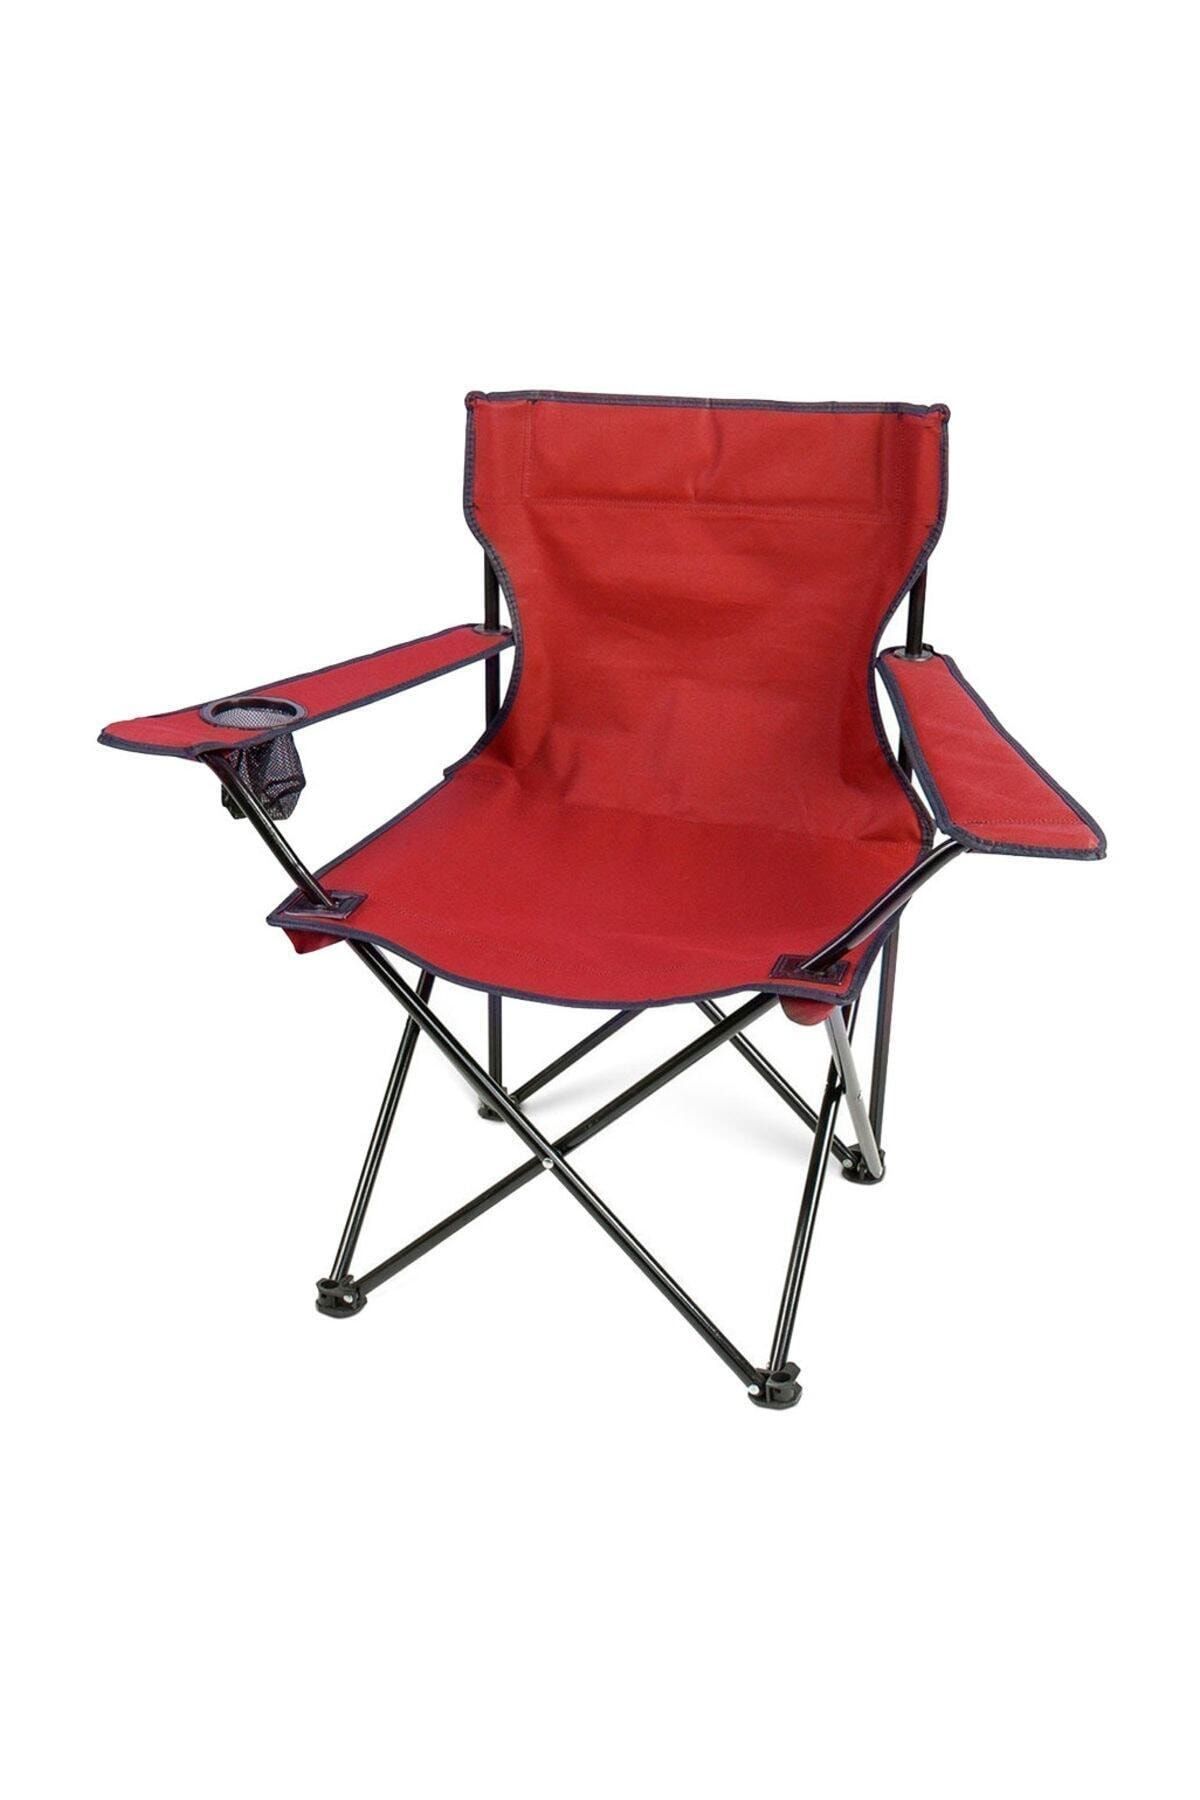 Kamp Sandalyesi Katlanır Sandalye Bahçe Koltuğu Piknik Plaj Balkon Sandalyesi Kırmızı.